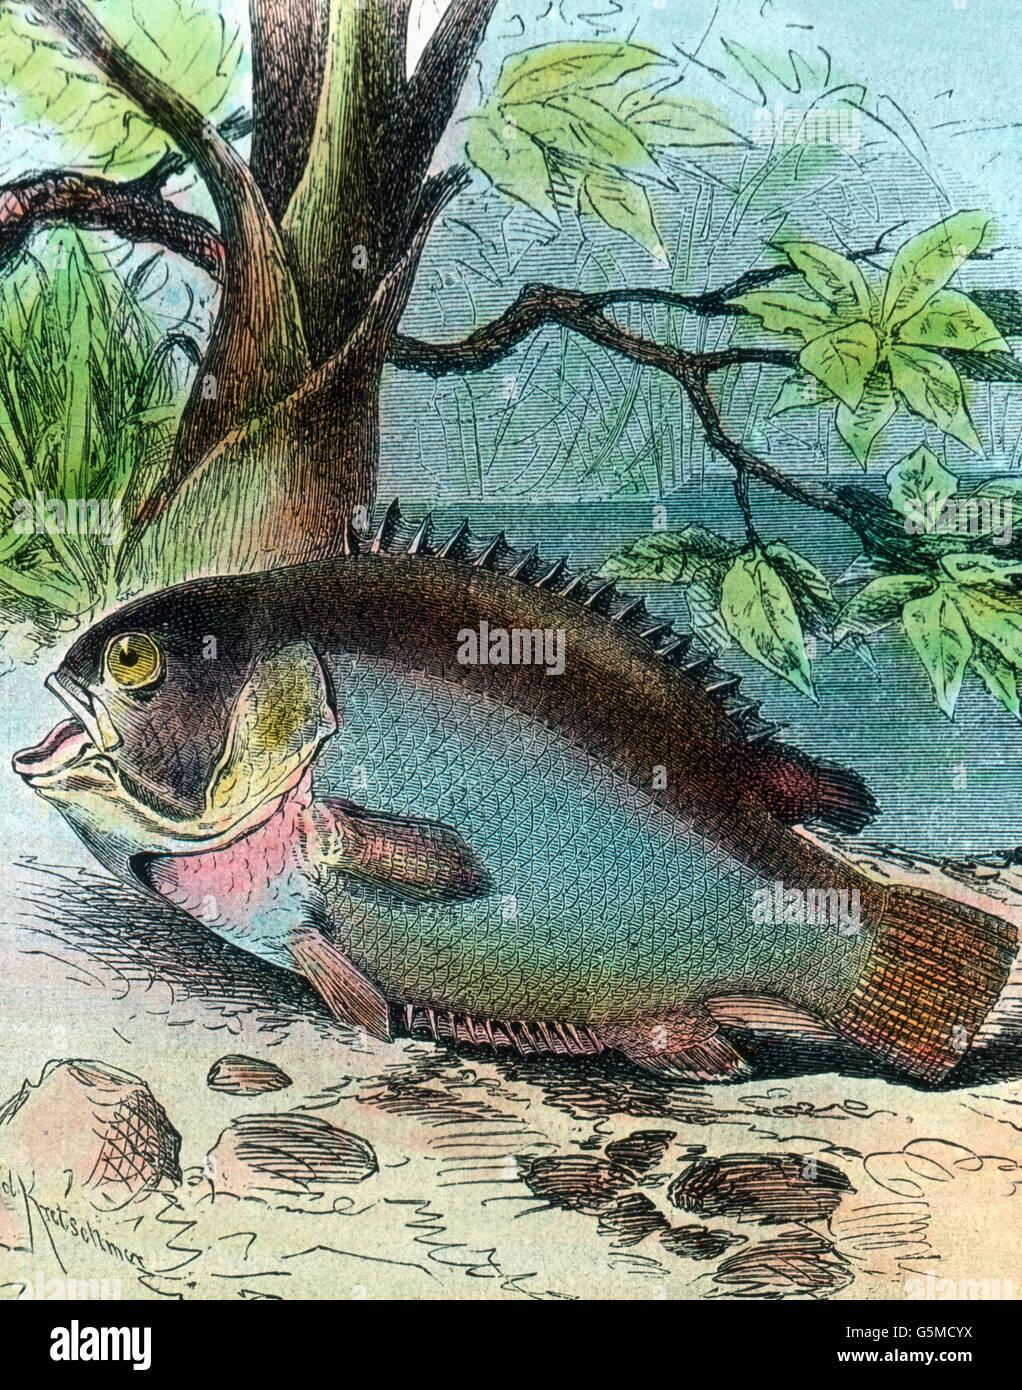 Fisch in der Illustration: Wanderisch, 1920er Jahre. Illustration of a wandering fish, 1920s. Stock Photo